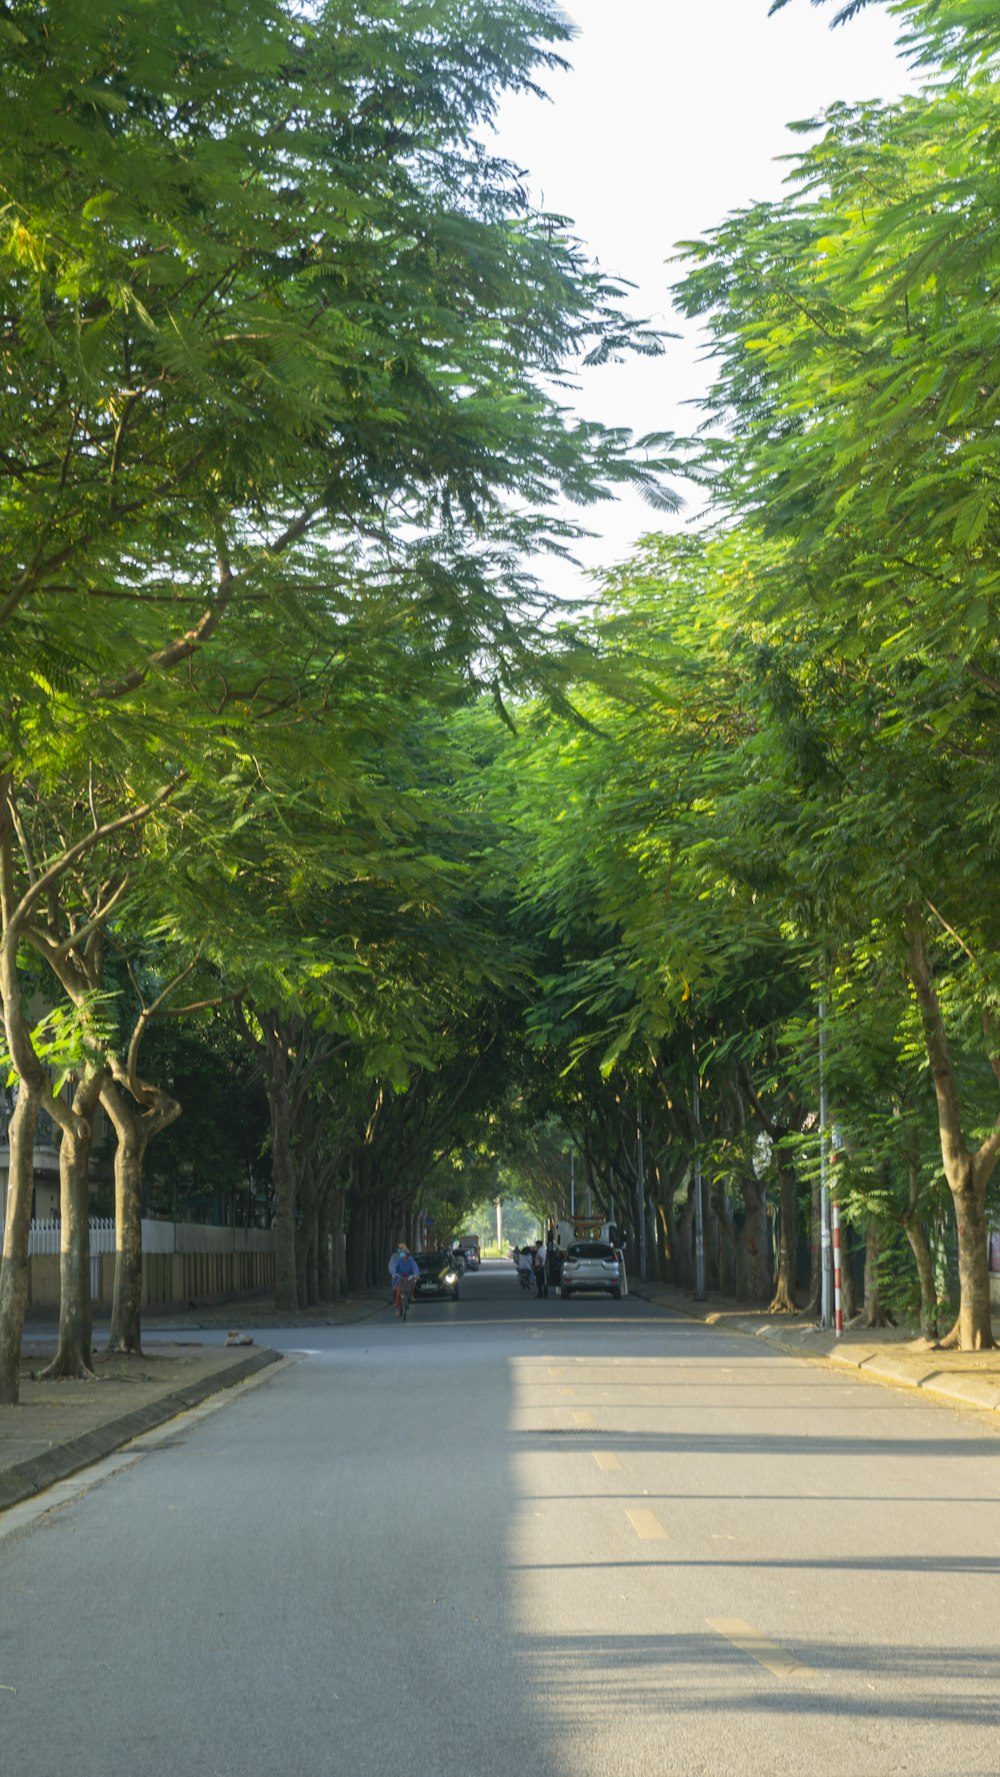 Una calle bordeada de muchos árboles verdes